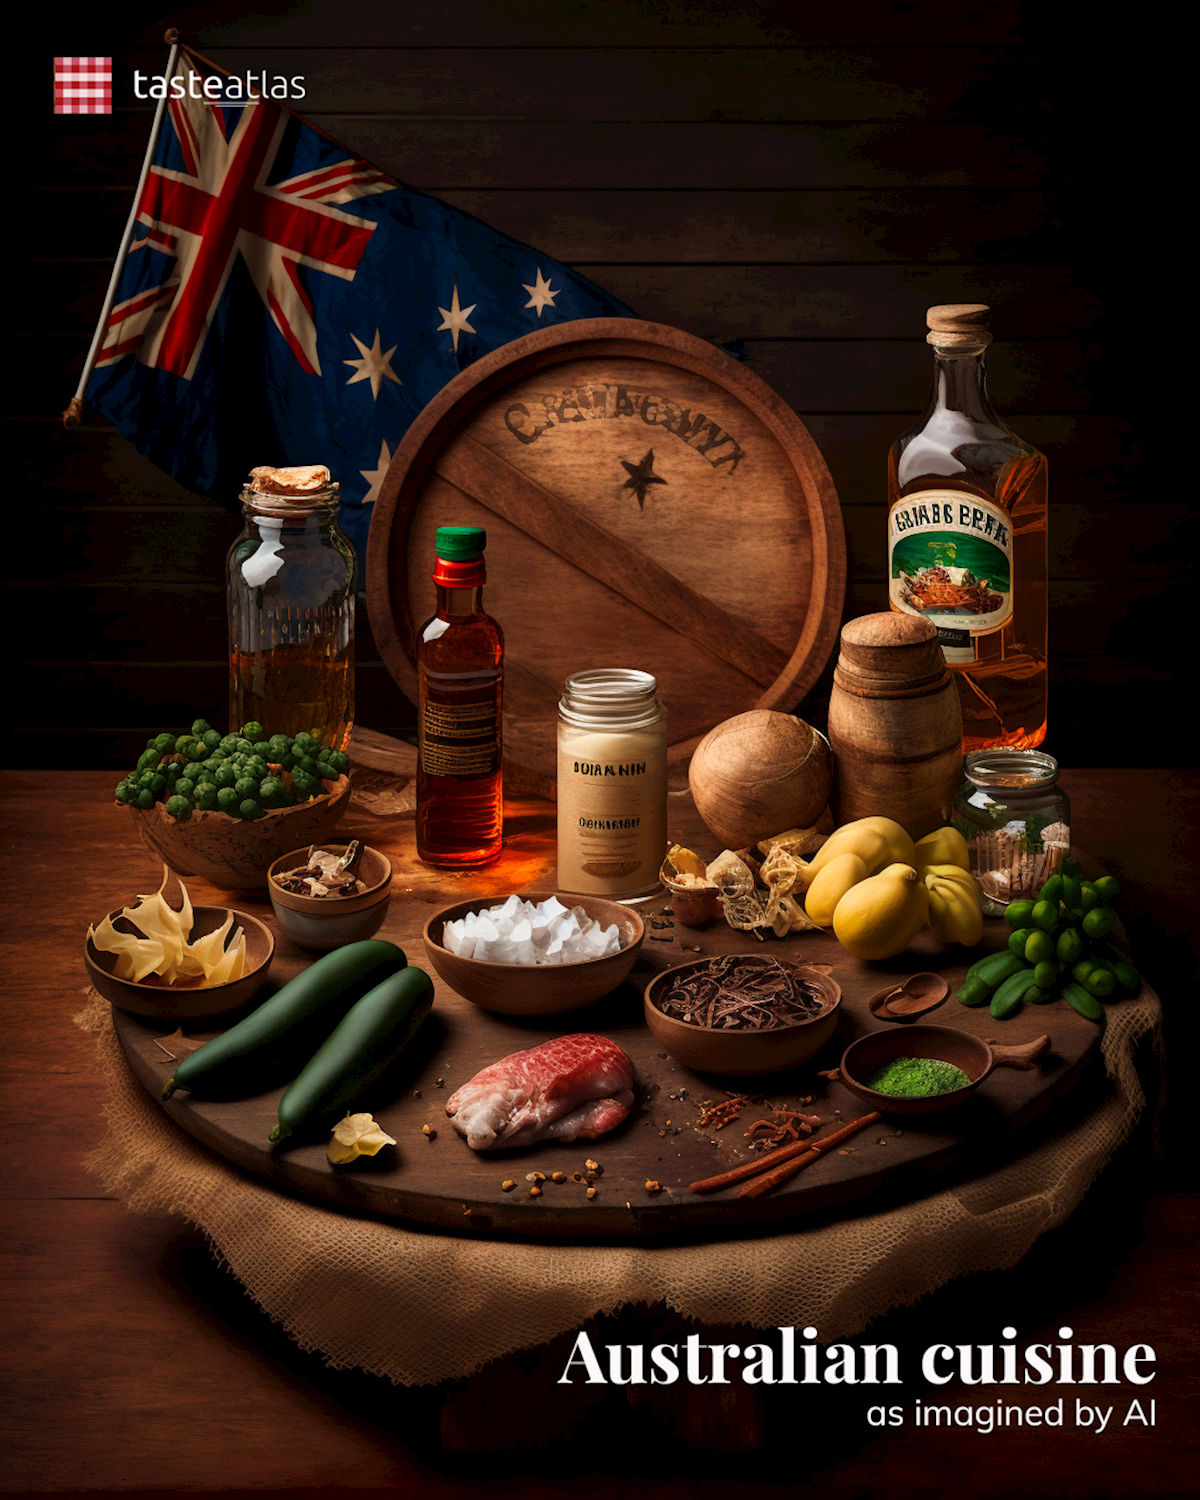 Prompt: Imagine Australian cuisine